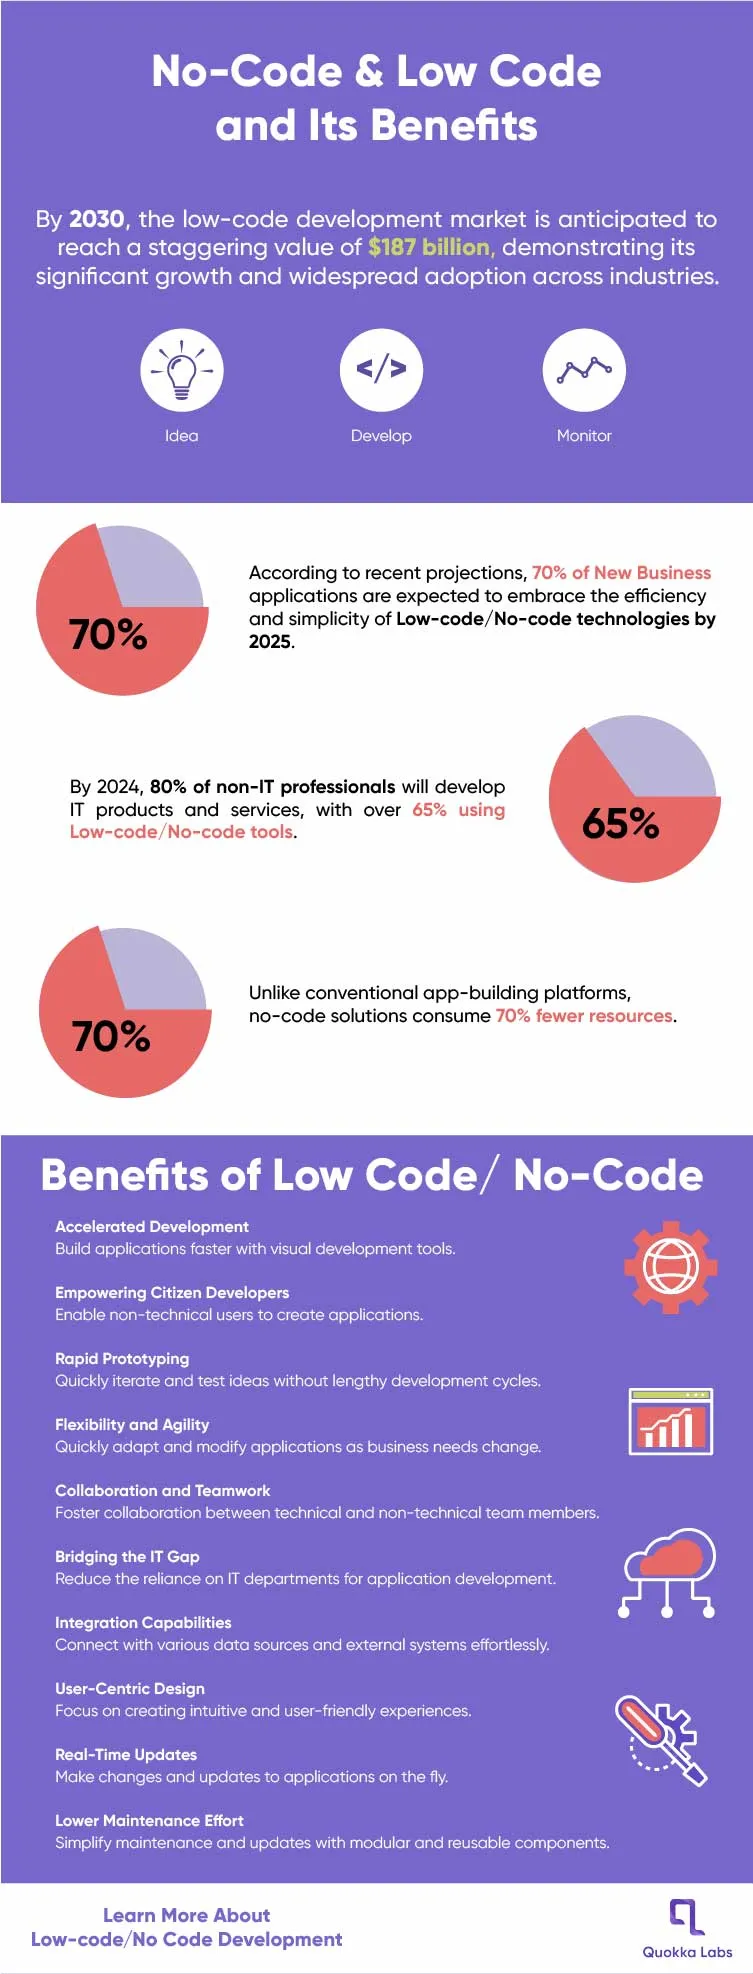 Benefits of Low Code & No Code